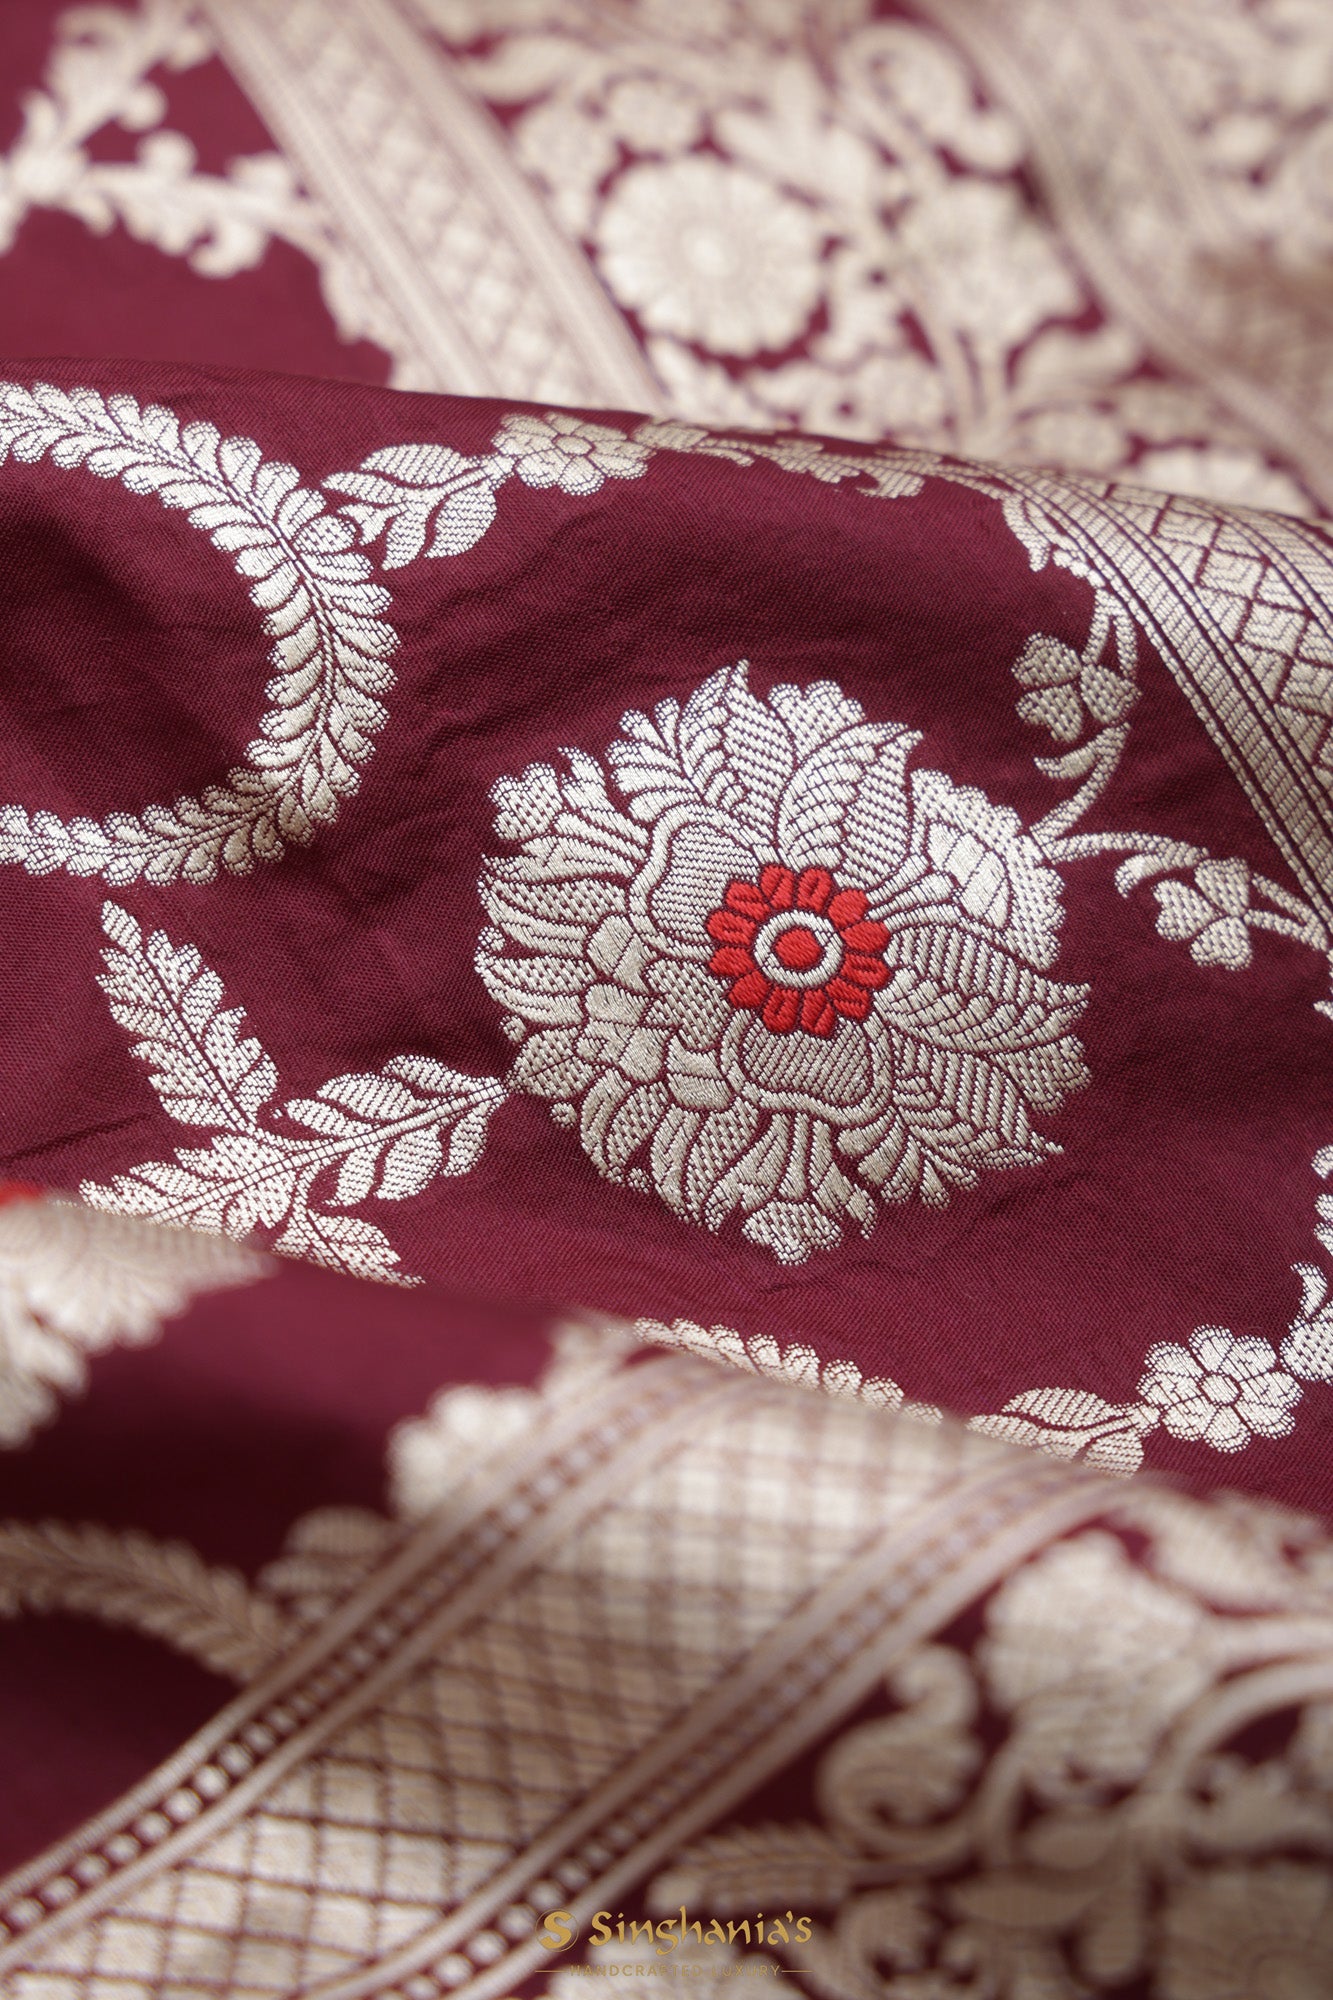 Deep Brown Katan Banarasi Silk Saree With Floral Jaal Weaving